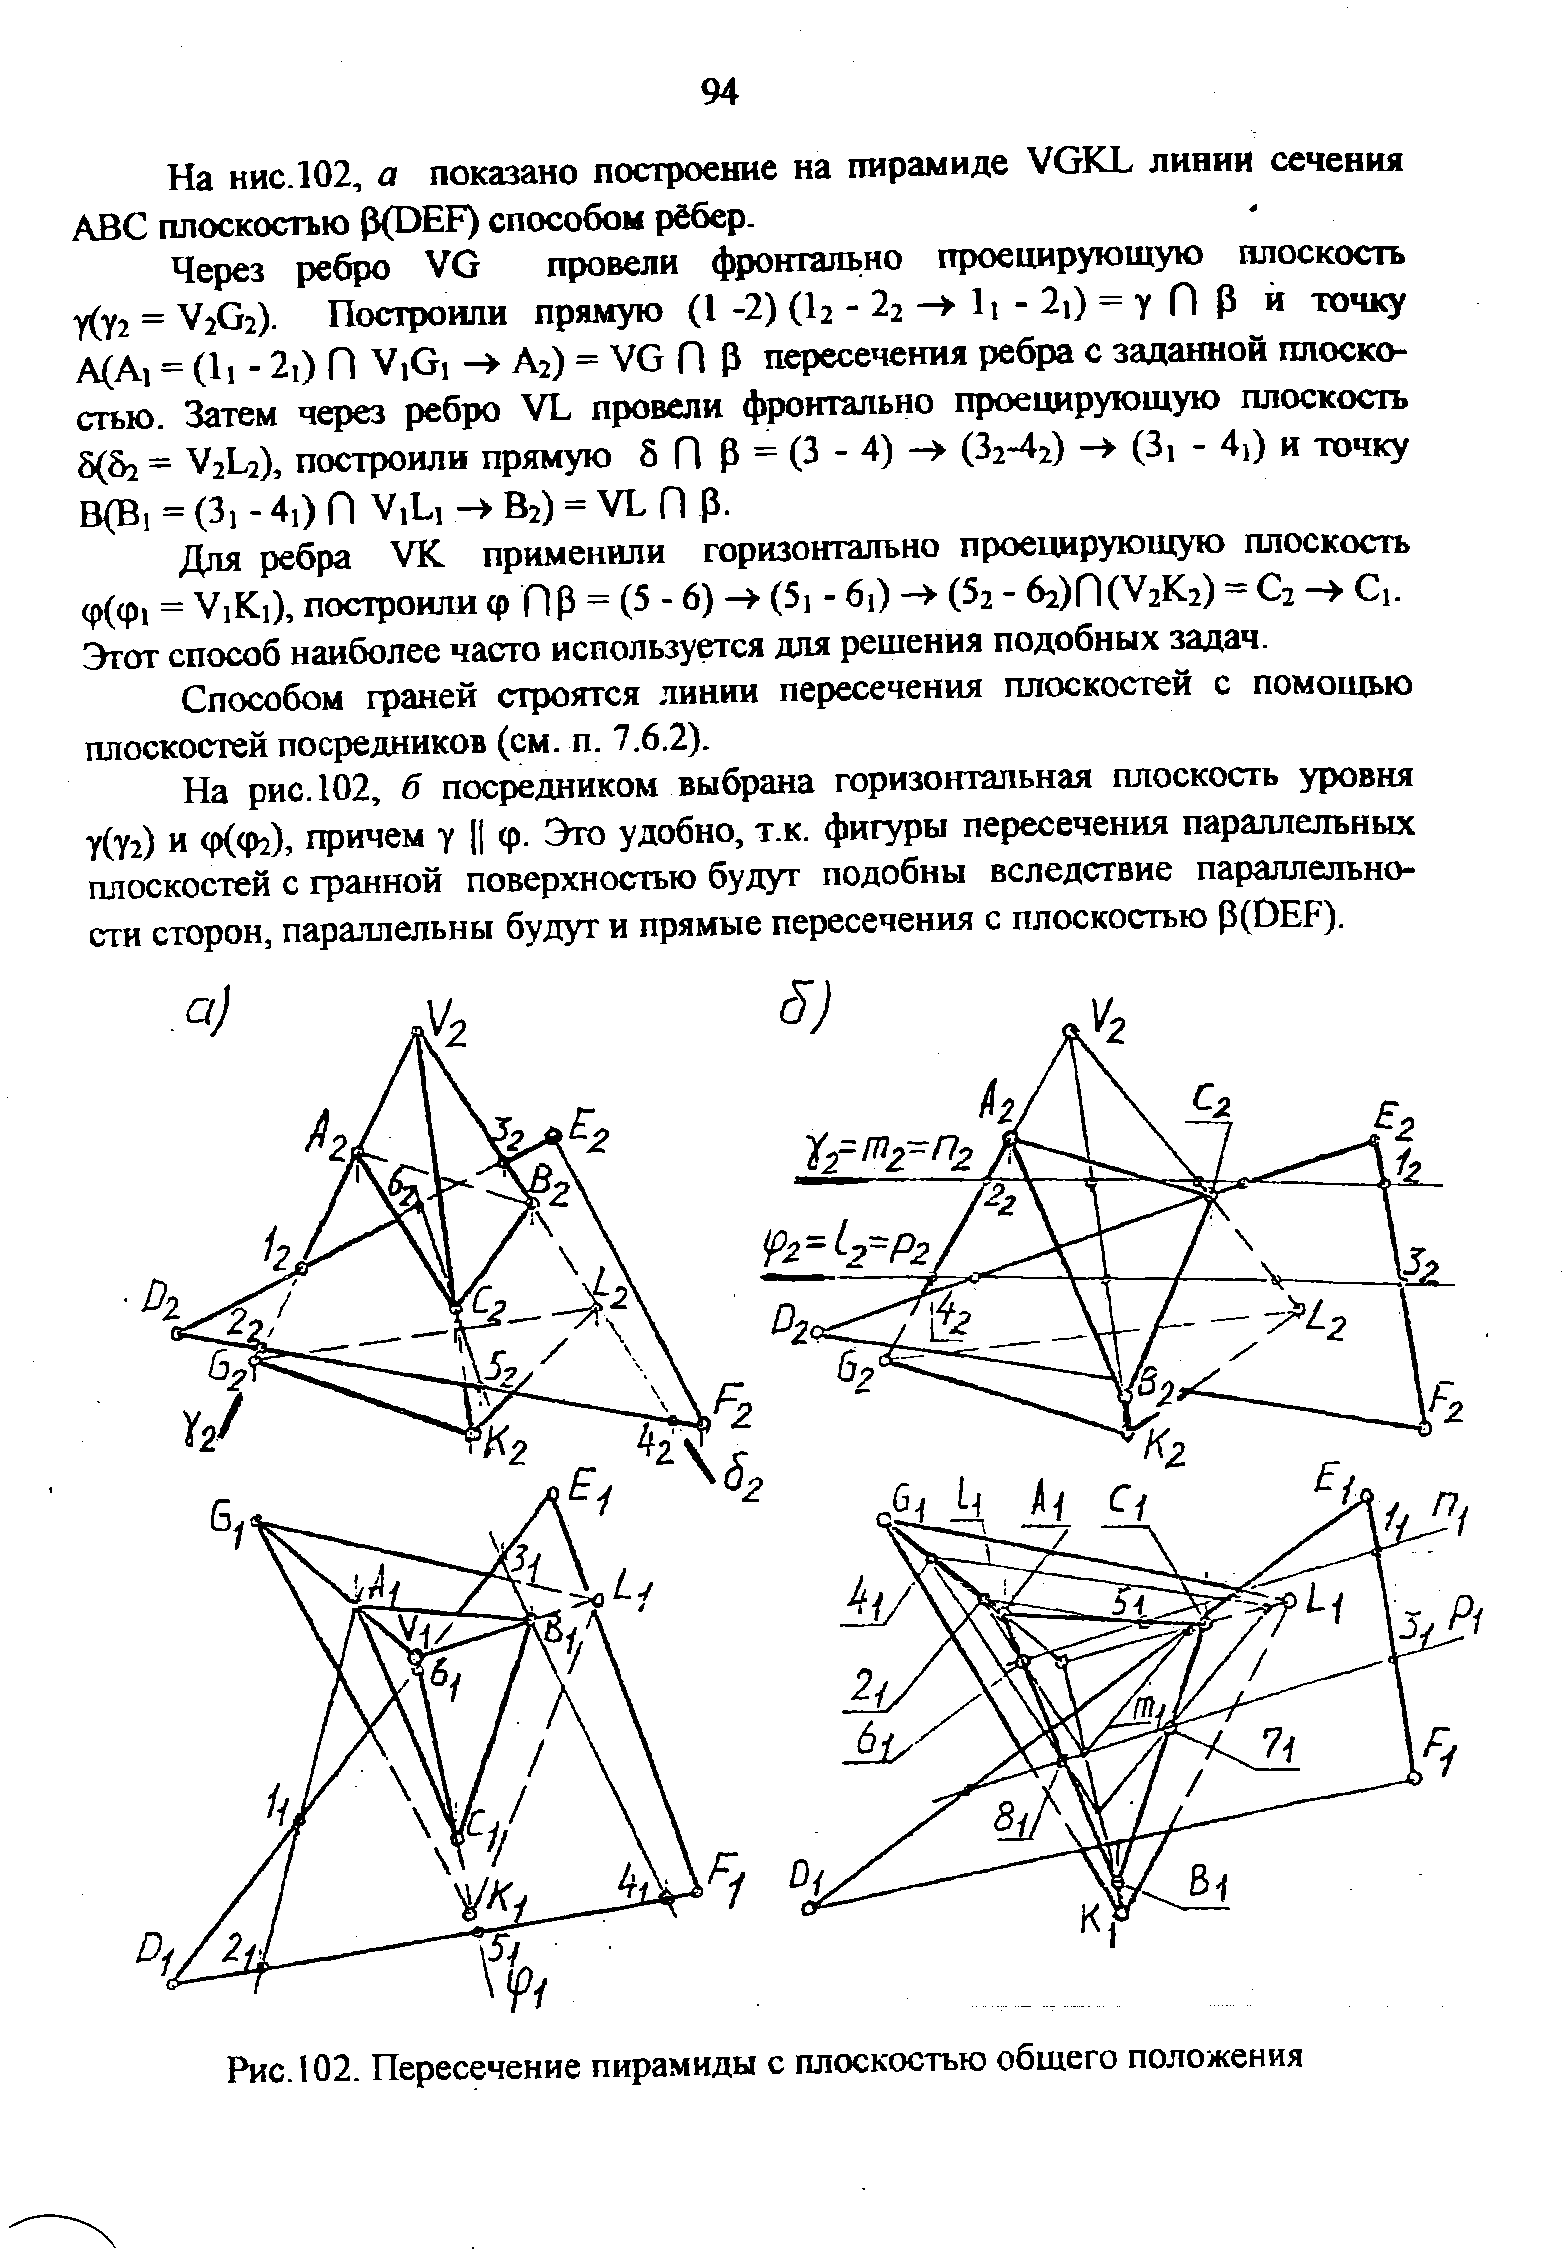 Рис. 102. Пересечение пирамиды с плоскостью общего положения
